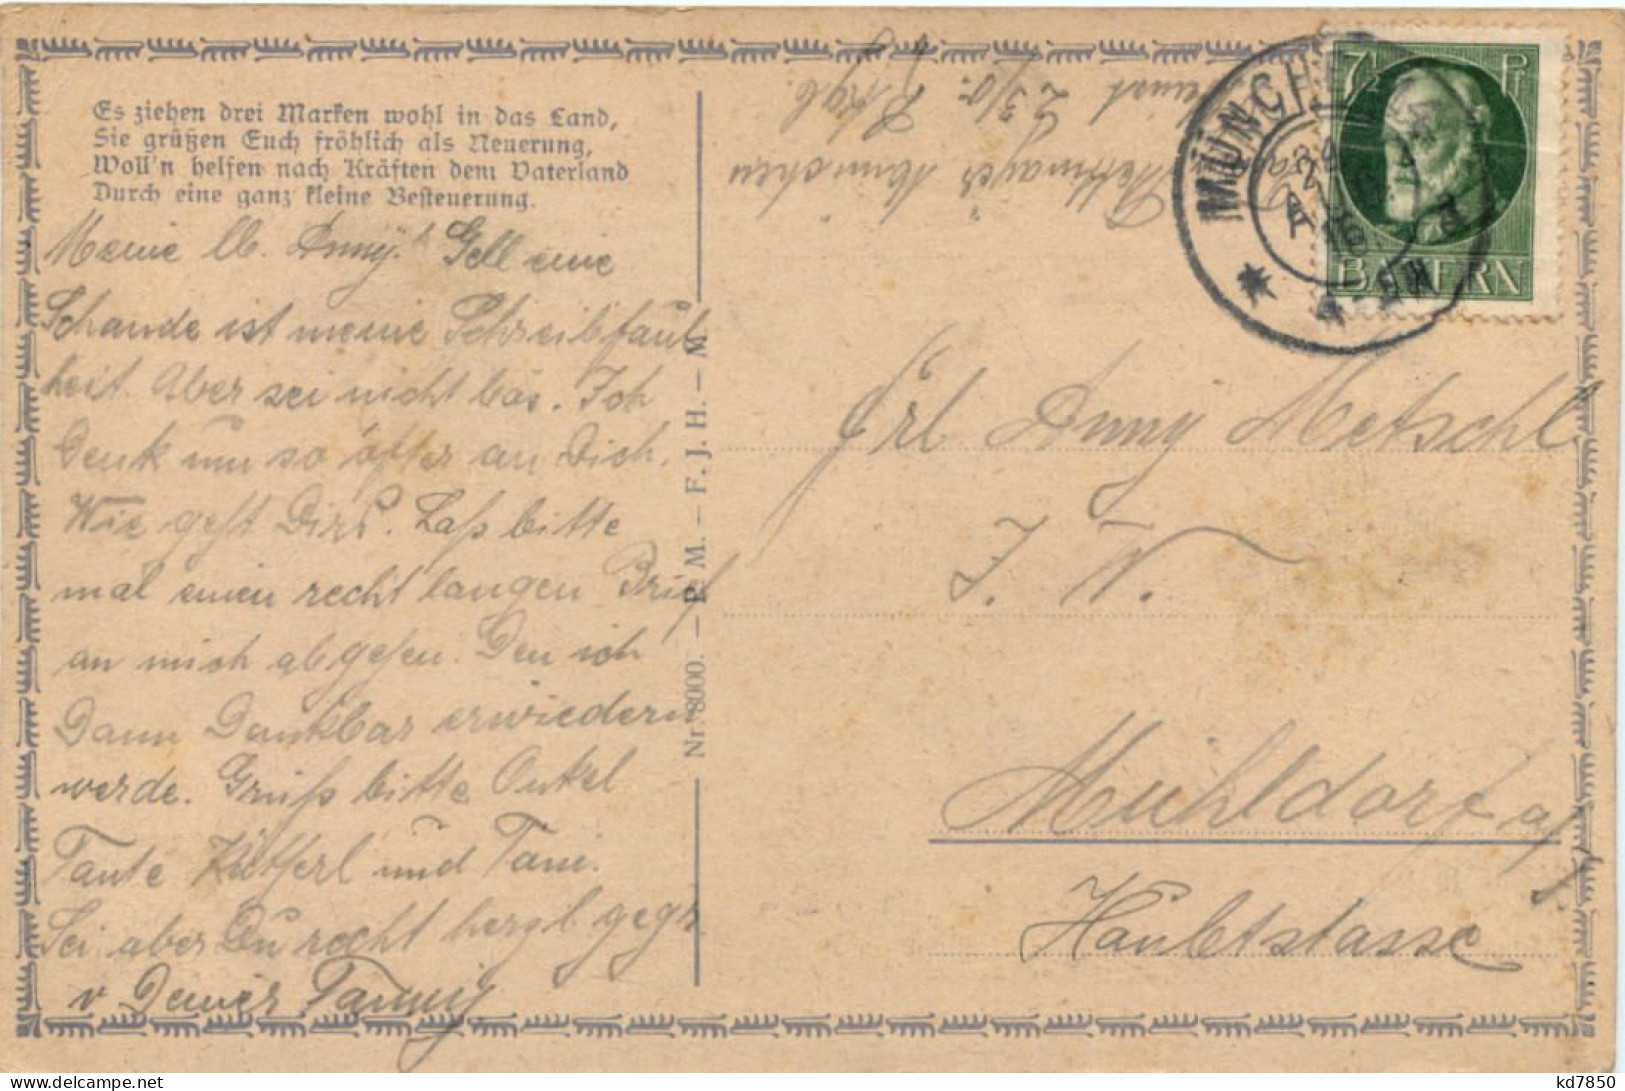 Einführung Neuer Briefmarken 1916 - Francobolli (rappresentazioni)